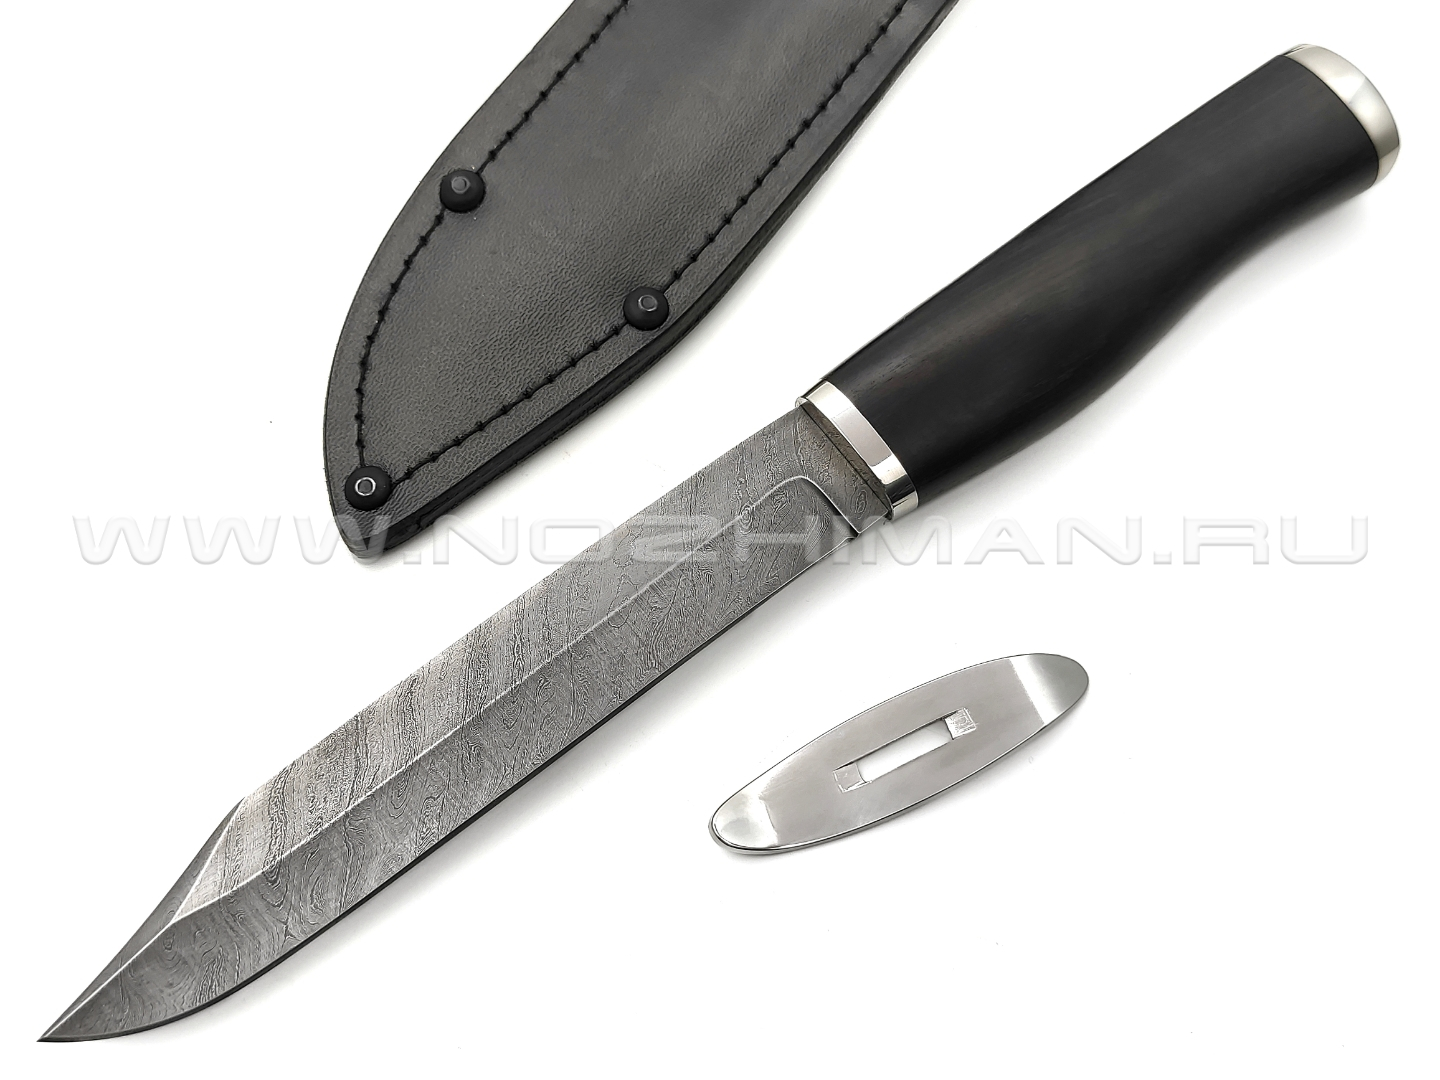 Нож разведчика НР-40 разборный, дамасская сталь, рукоять дерево граб, мельхиор (Титов & Солдатова)